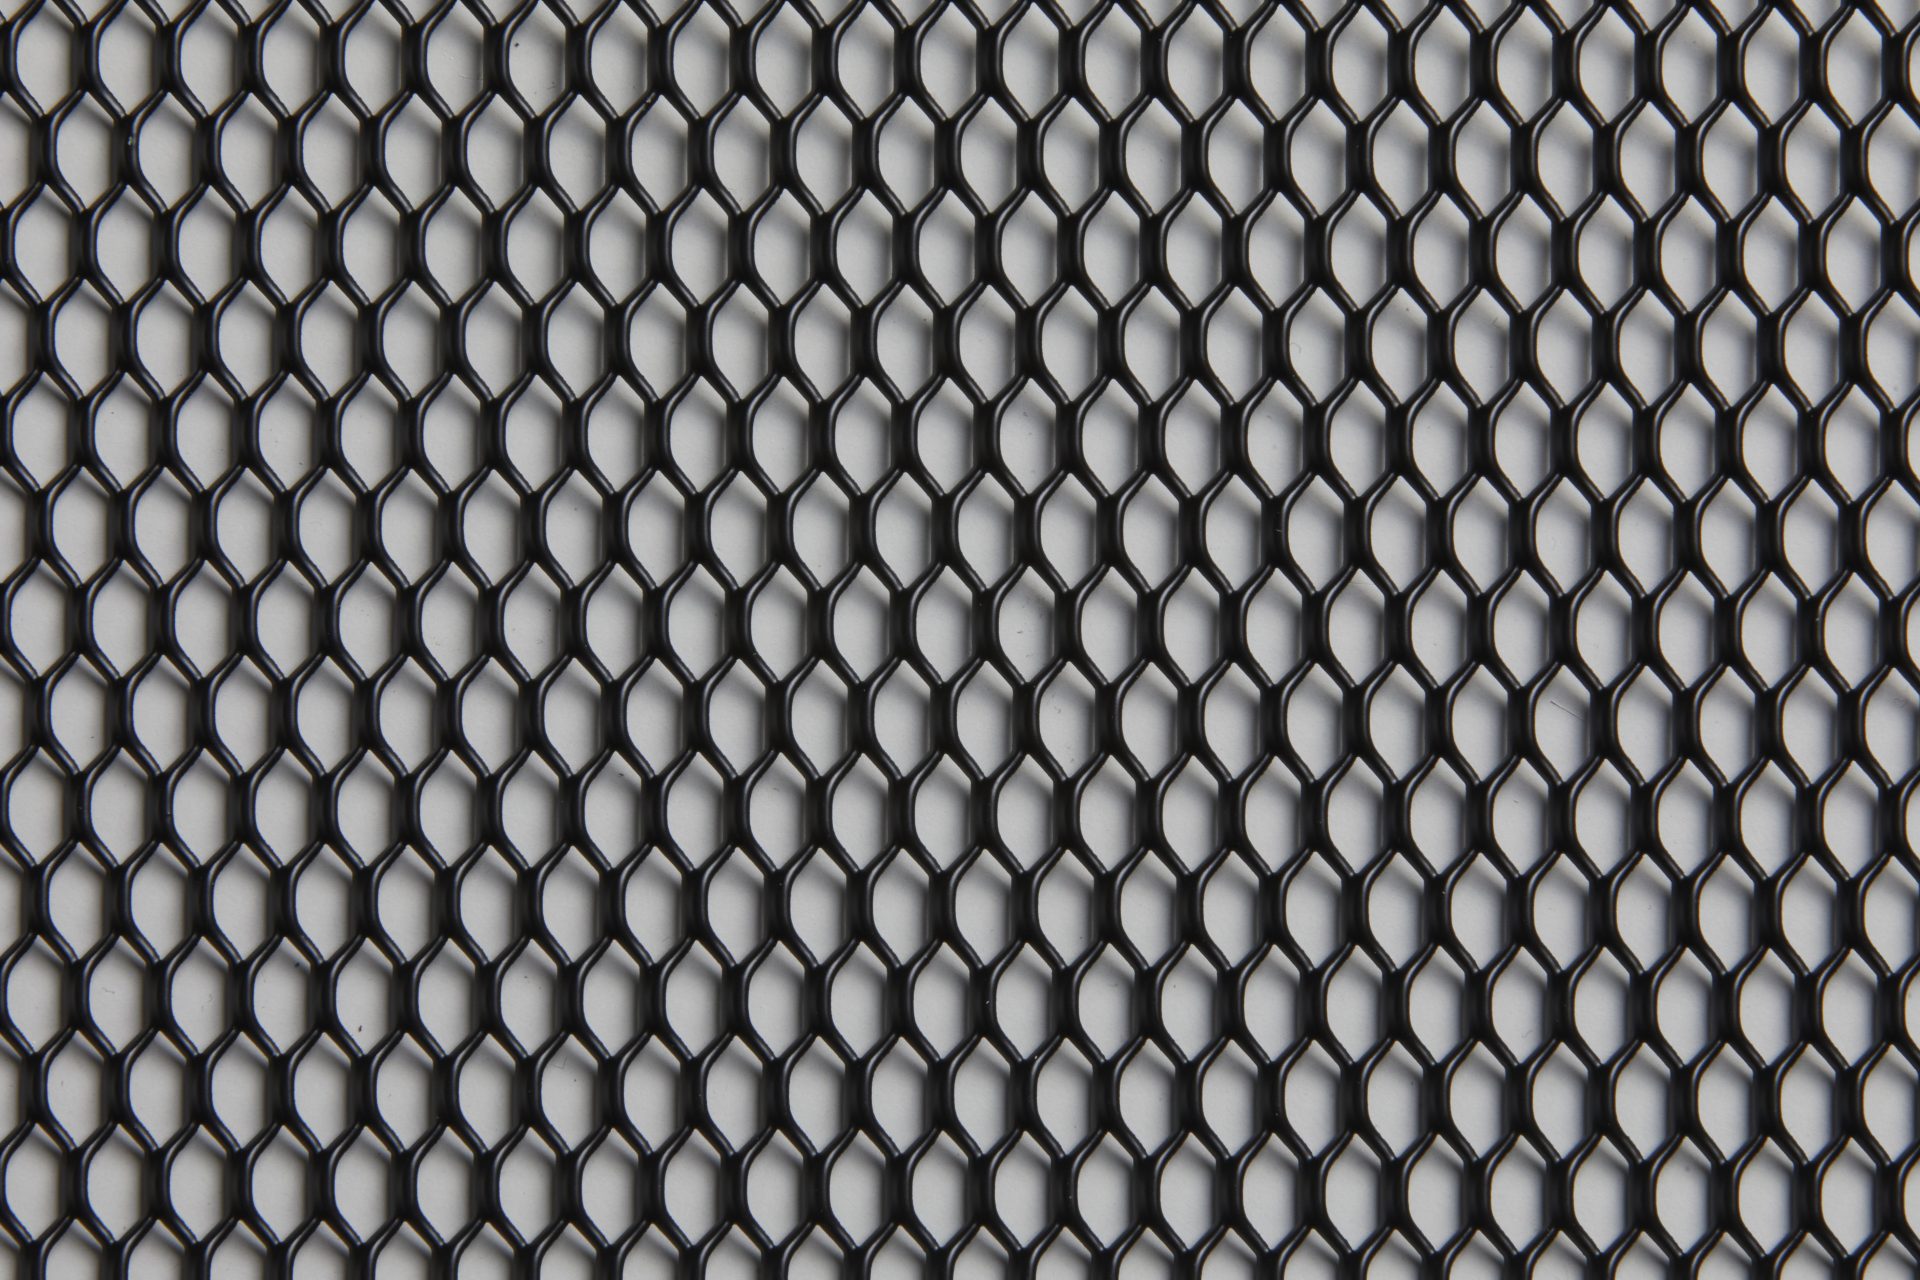 Zentia Ceiling Tile DecoMesh E15 Face Pattern Black